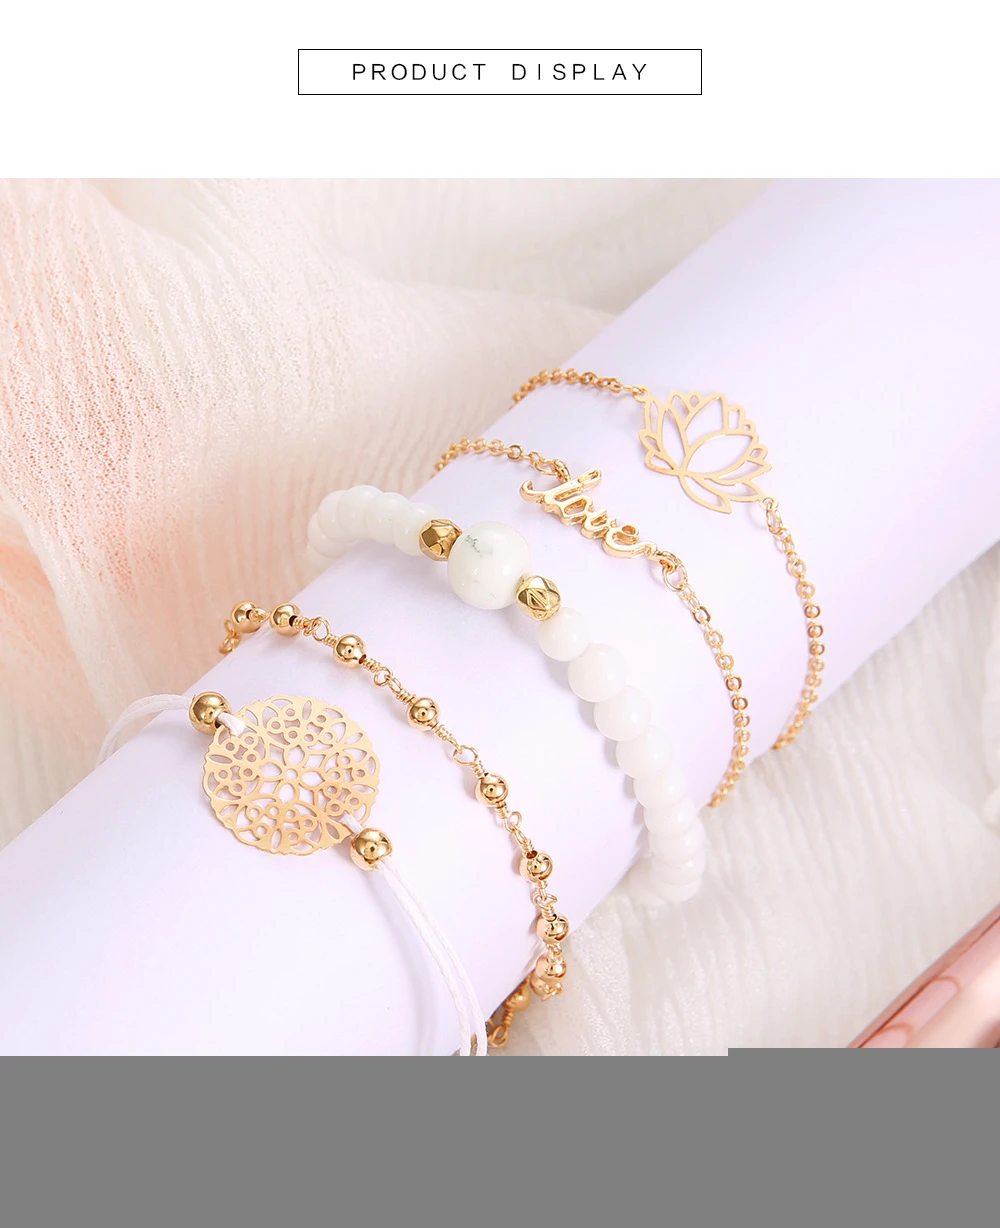 19 стильные богемные браслеты и браслеты для женщин ретро Boho геометрические браслеты наборы женские модные ювелирные аксессуары